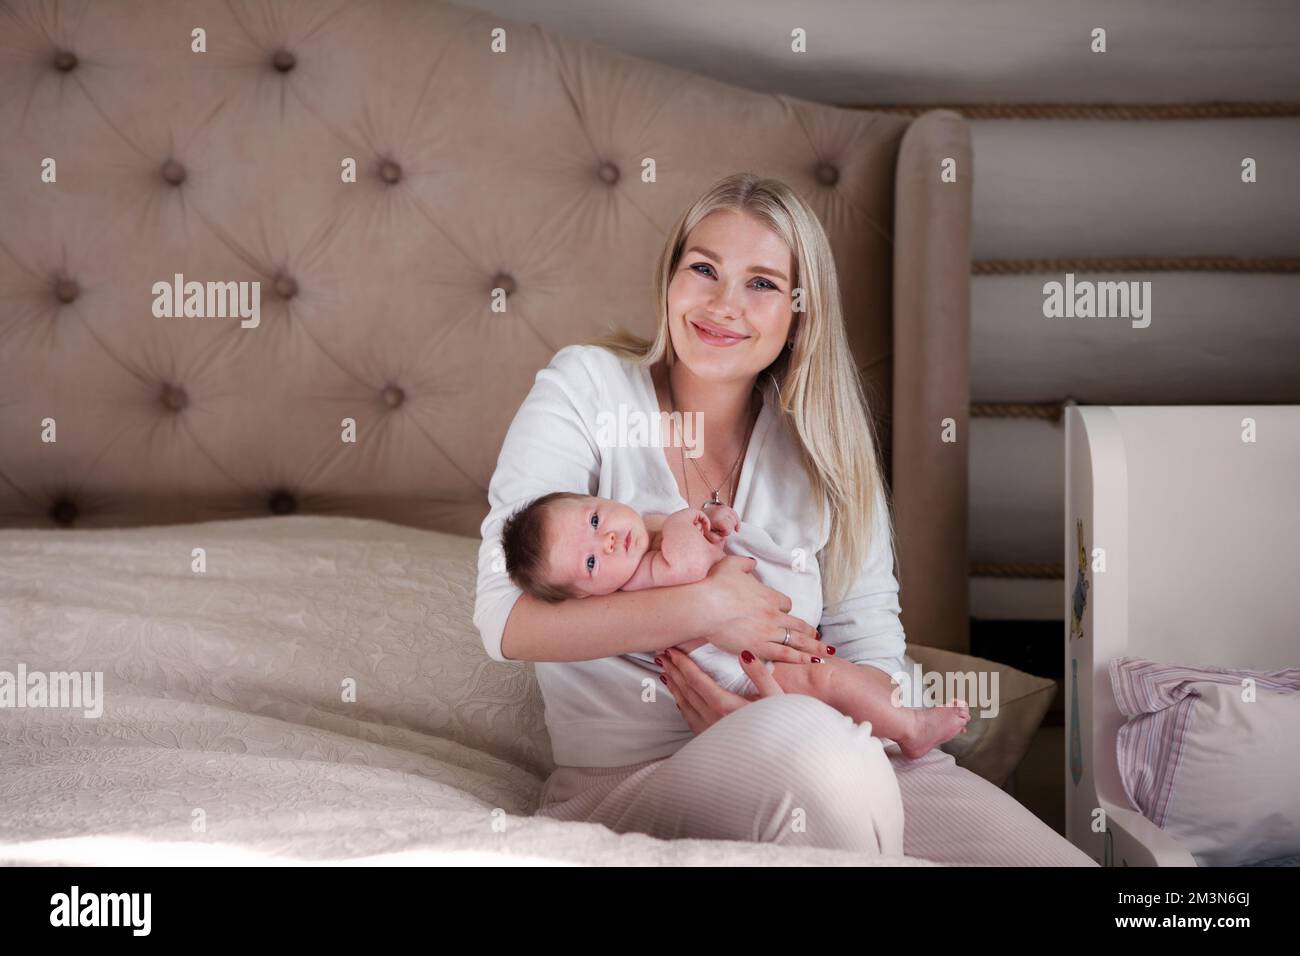 La madre felice tiene il bambino neonato fra le braccia, sorride seduto sul letto e guarda la macchina fotografica. Bella mamma bionda con capelli lunghi e suo bambino a casa Foto Stock